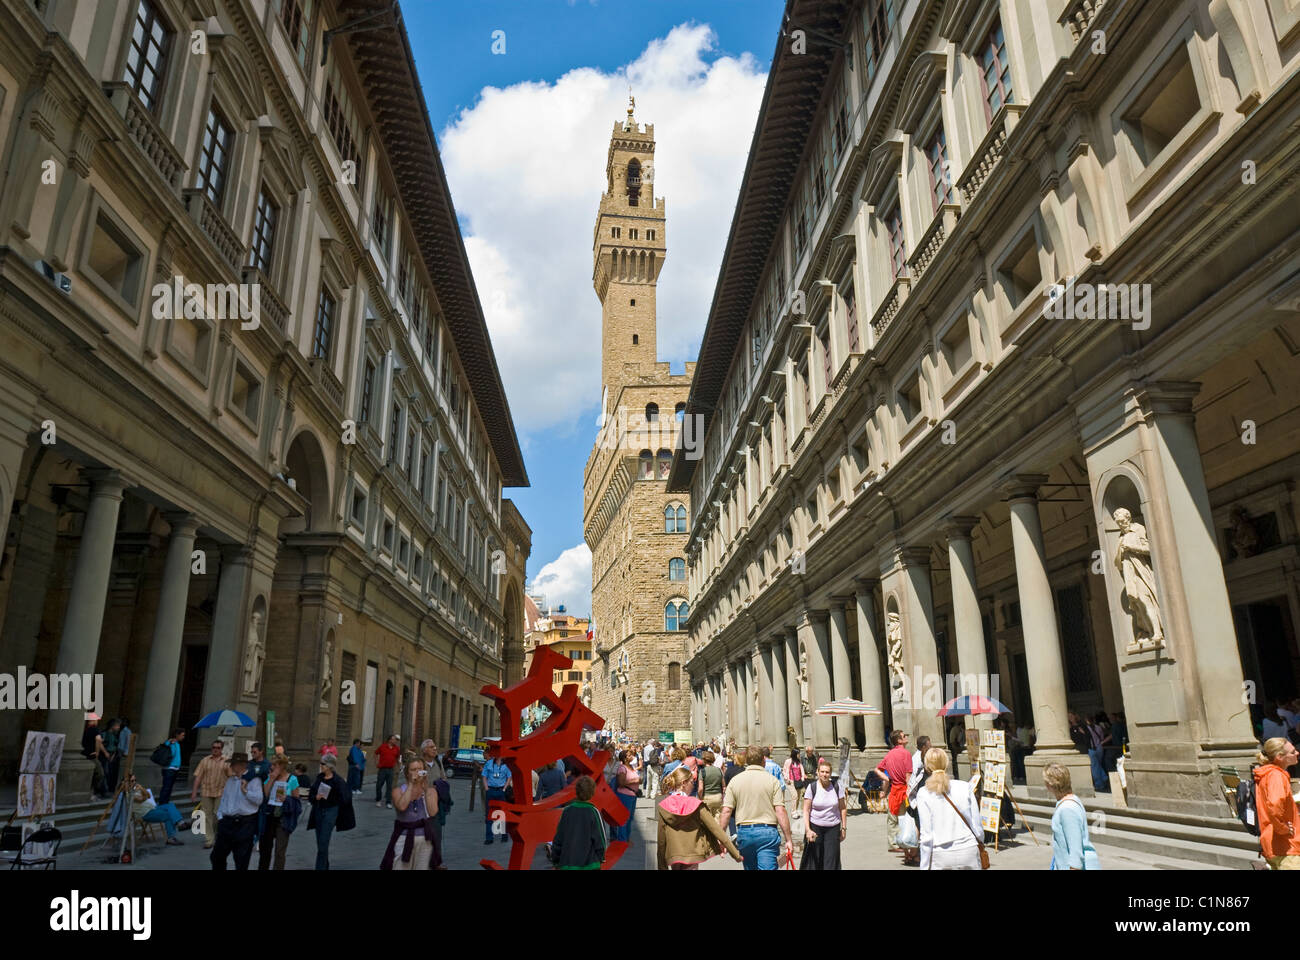 Florenz, Italien. Piazza Degli Uffizi Galerie der Uffizien auf der rechten Seite und der Palazzo Vecchio Turm in der Mitte. Stockfoto